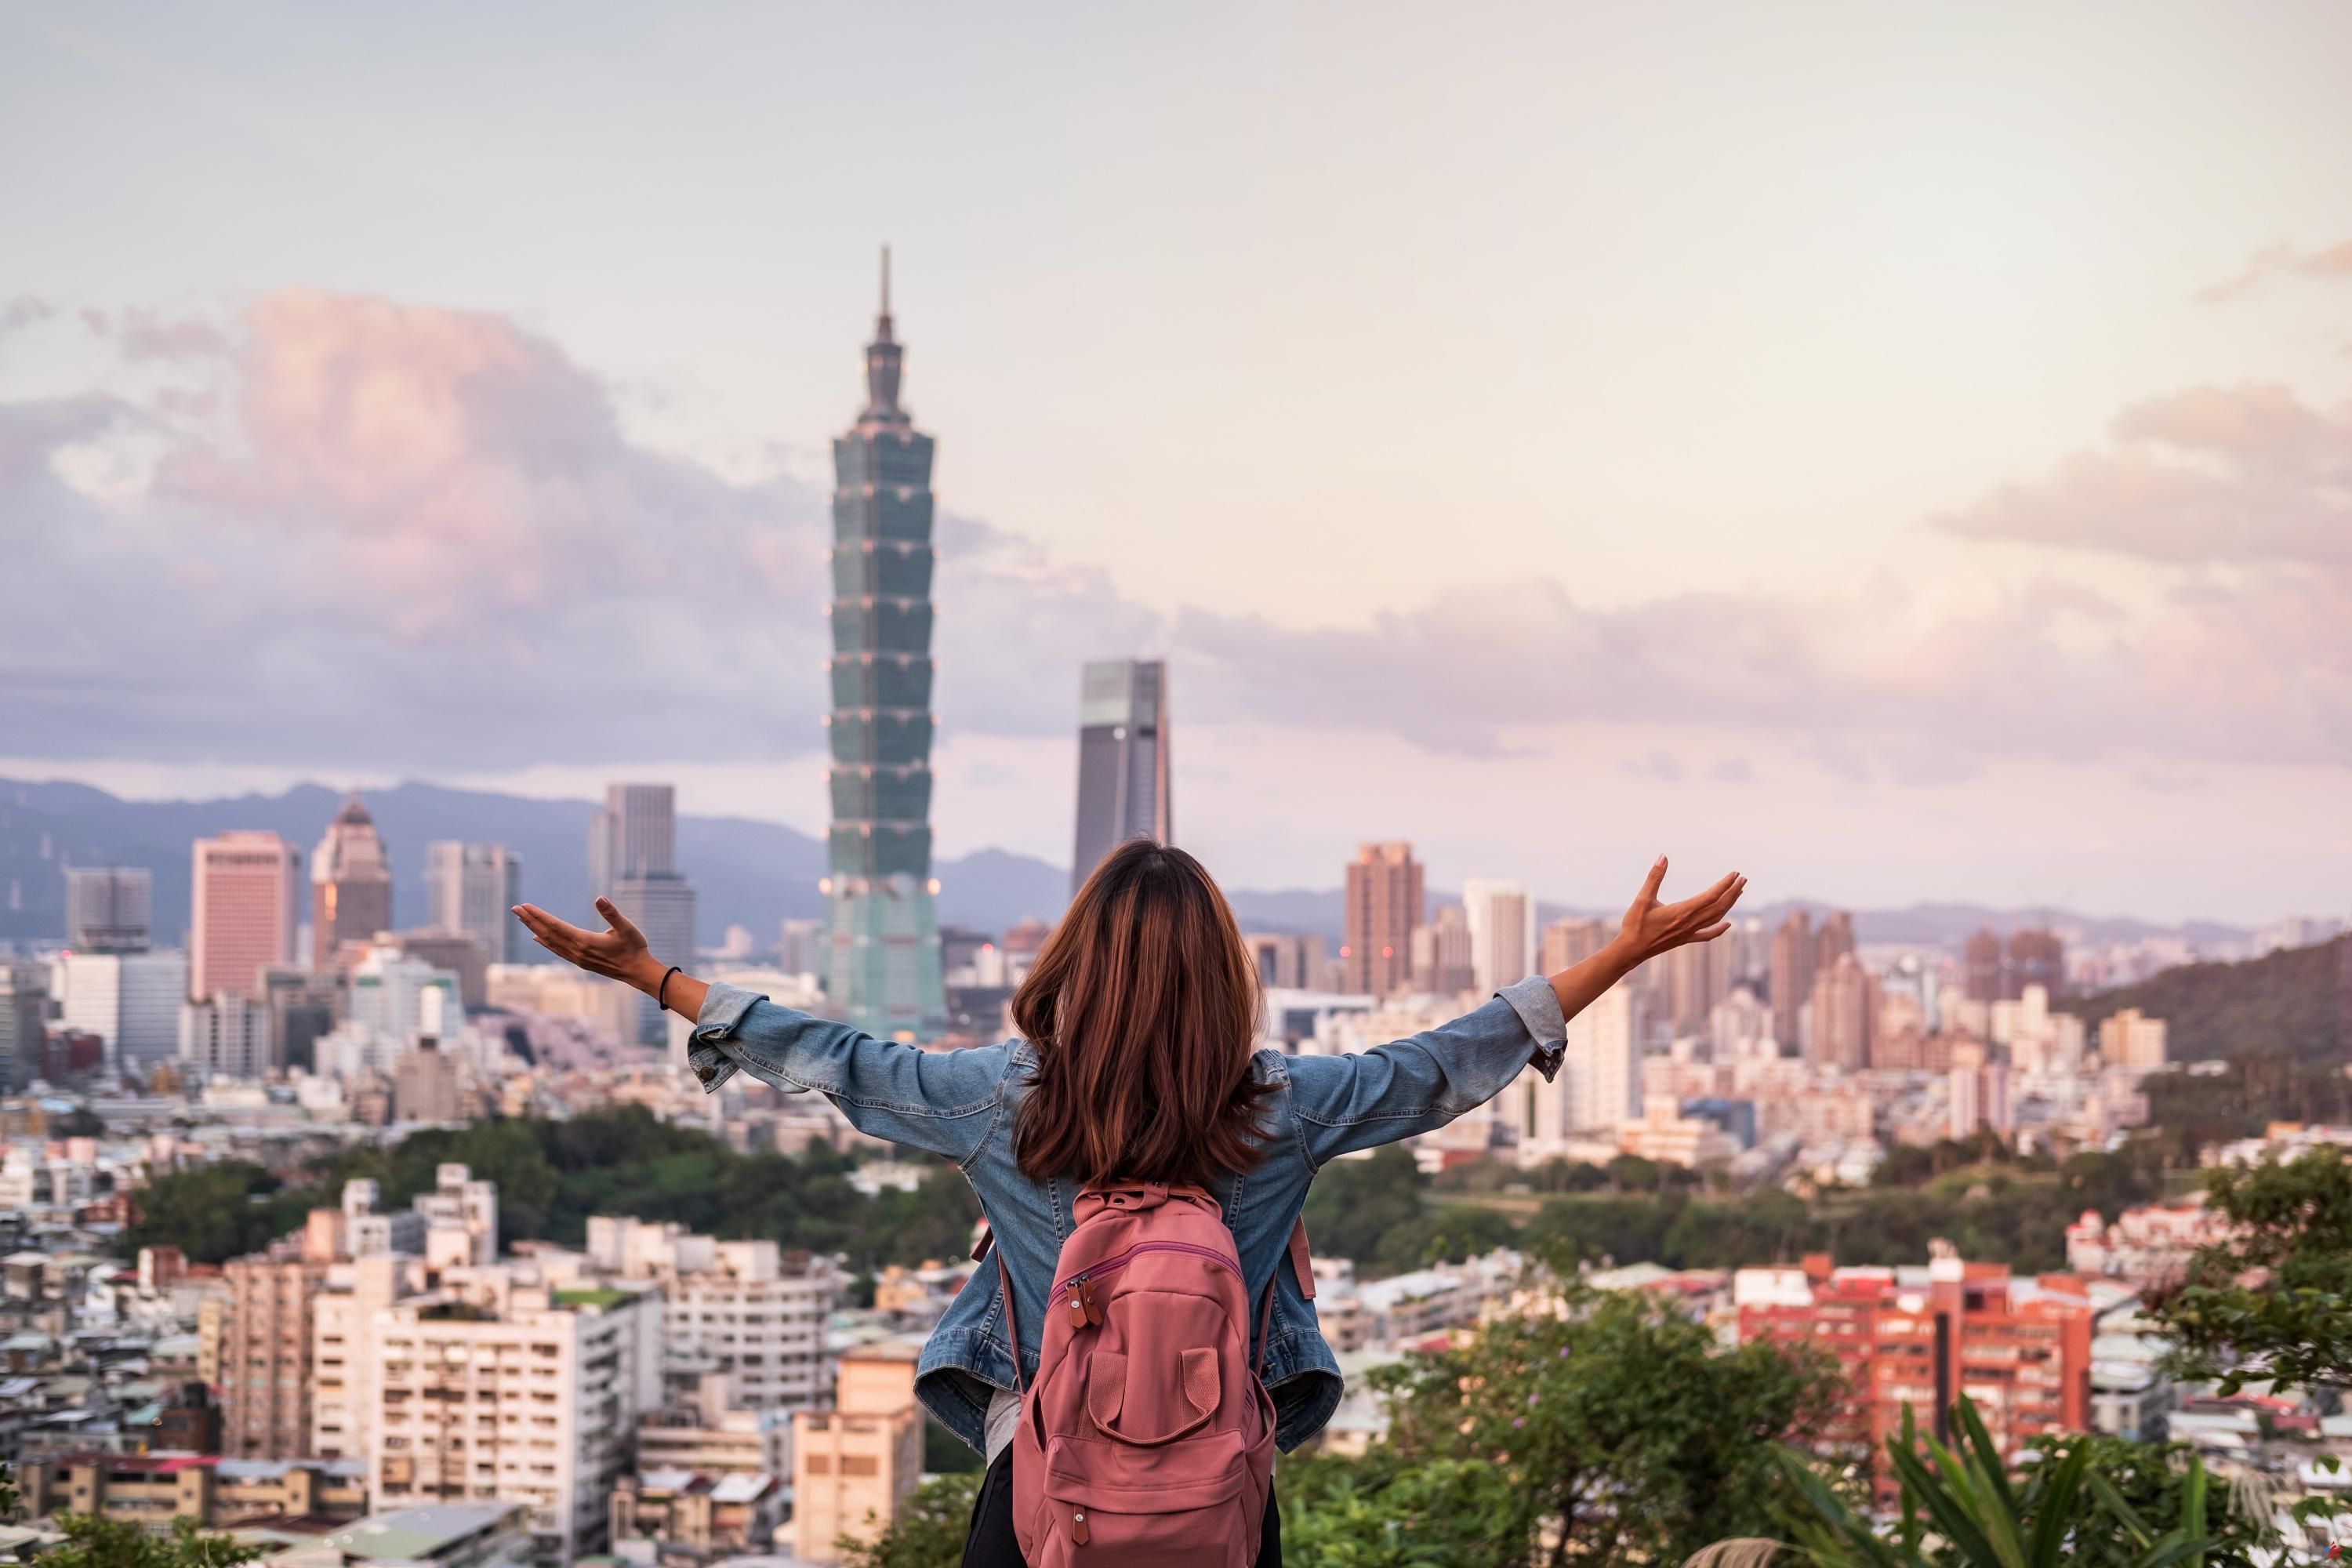 Destino “dupe” del año, por qué Taipei es una capital asiática por descubrir